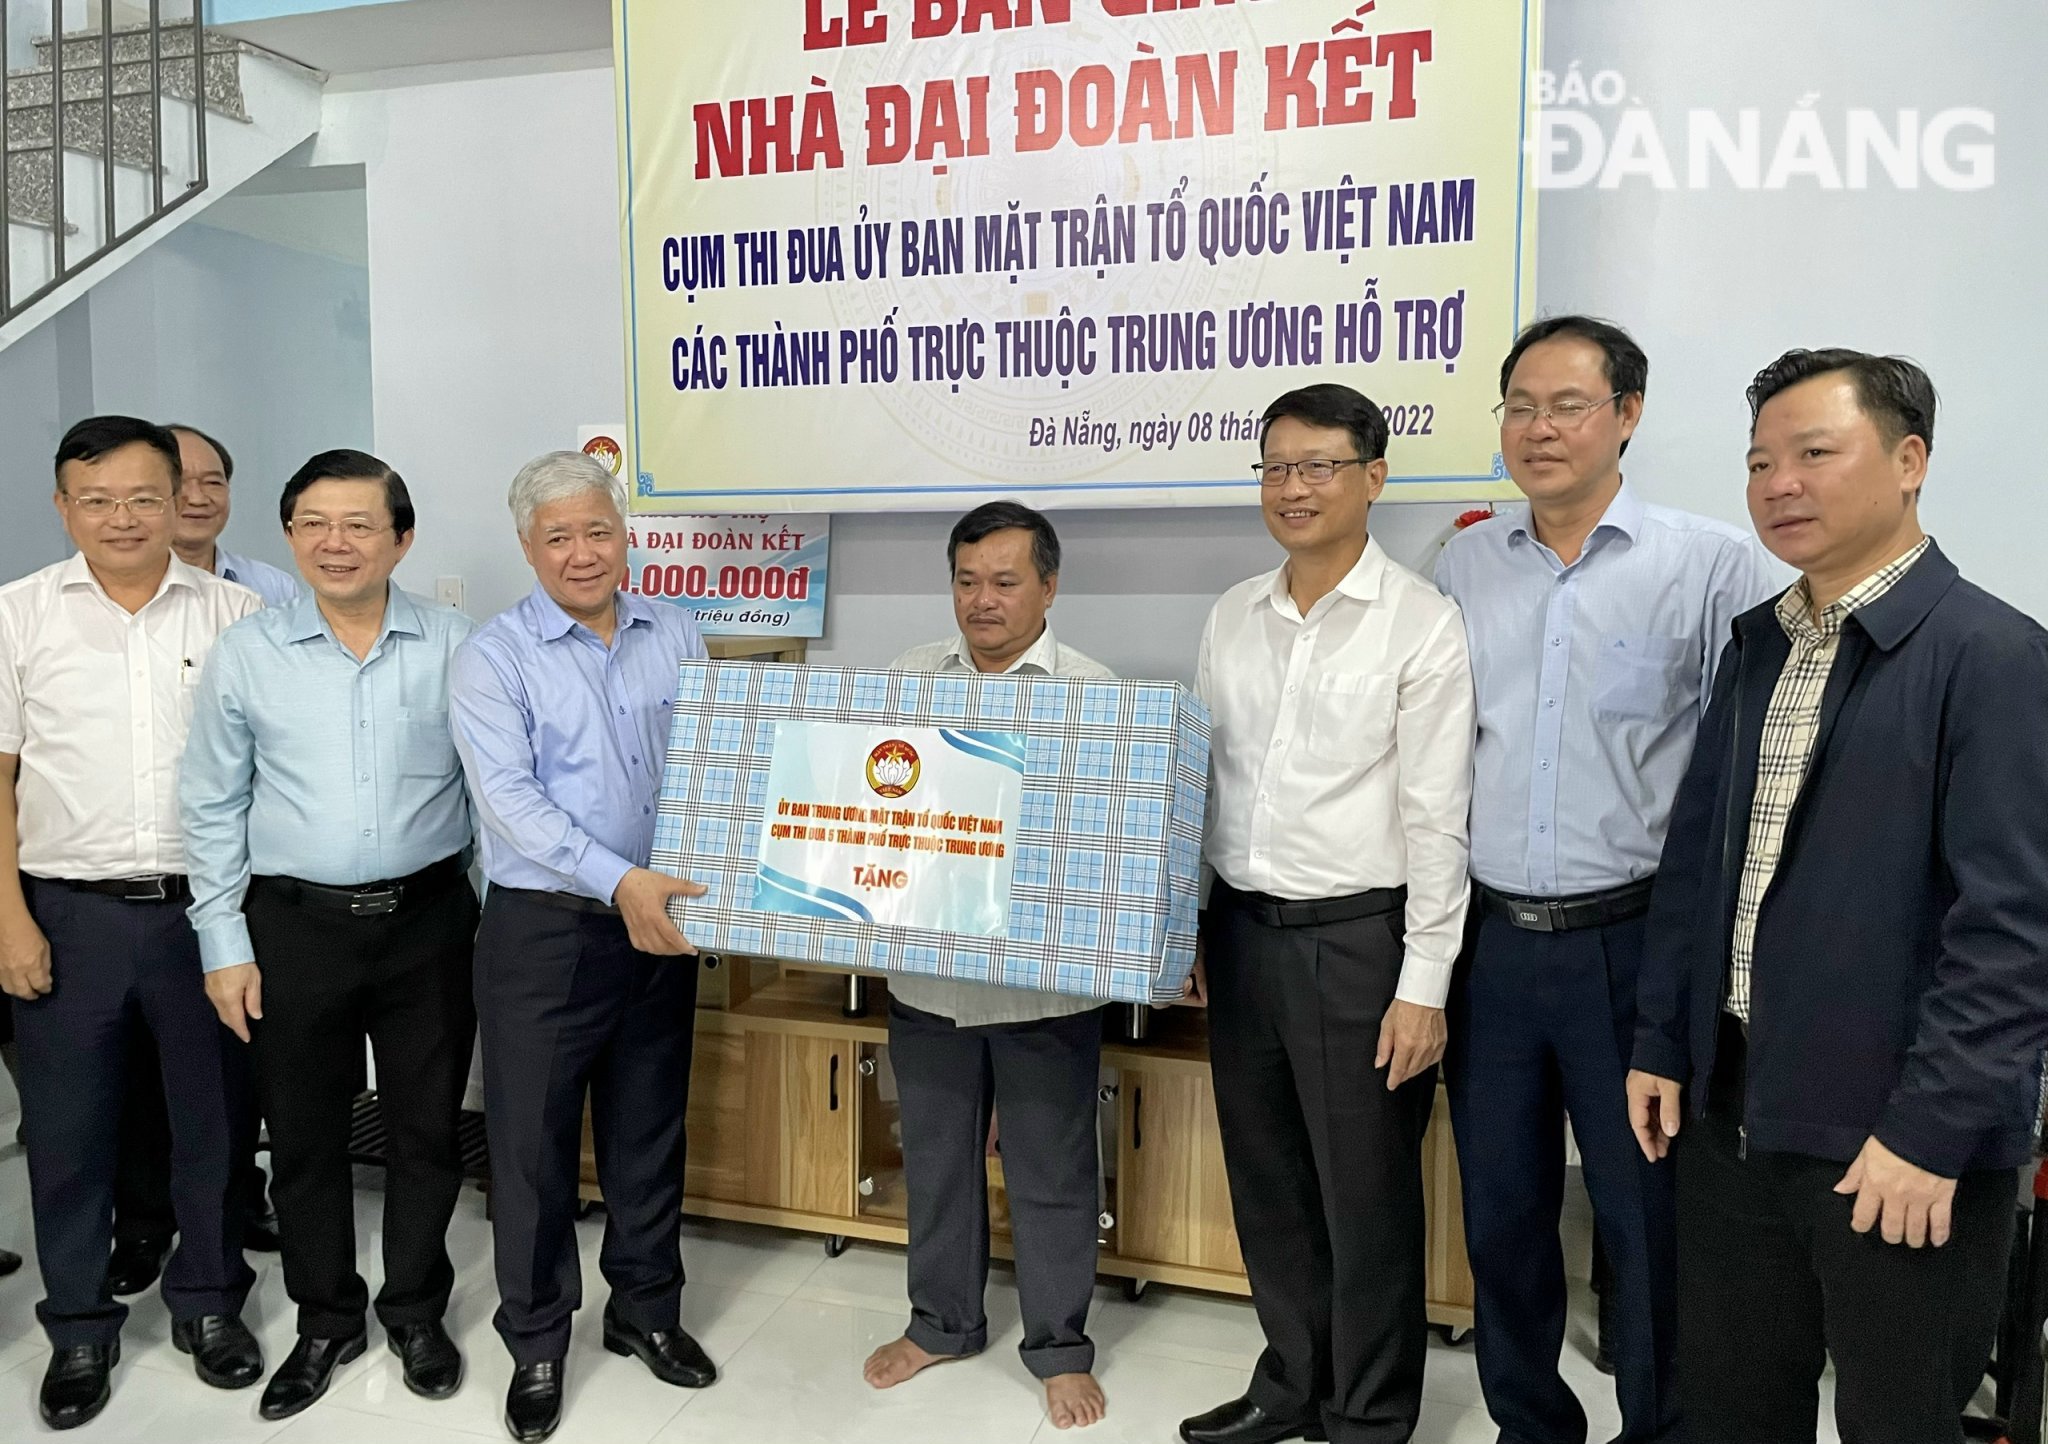 Lãnh đạo Ủy ban Trung ương MTTQ Việt Nam tặng nhà đại đoàn kết cho hộ nghèo